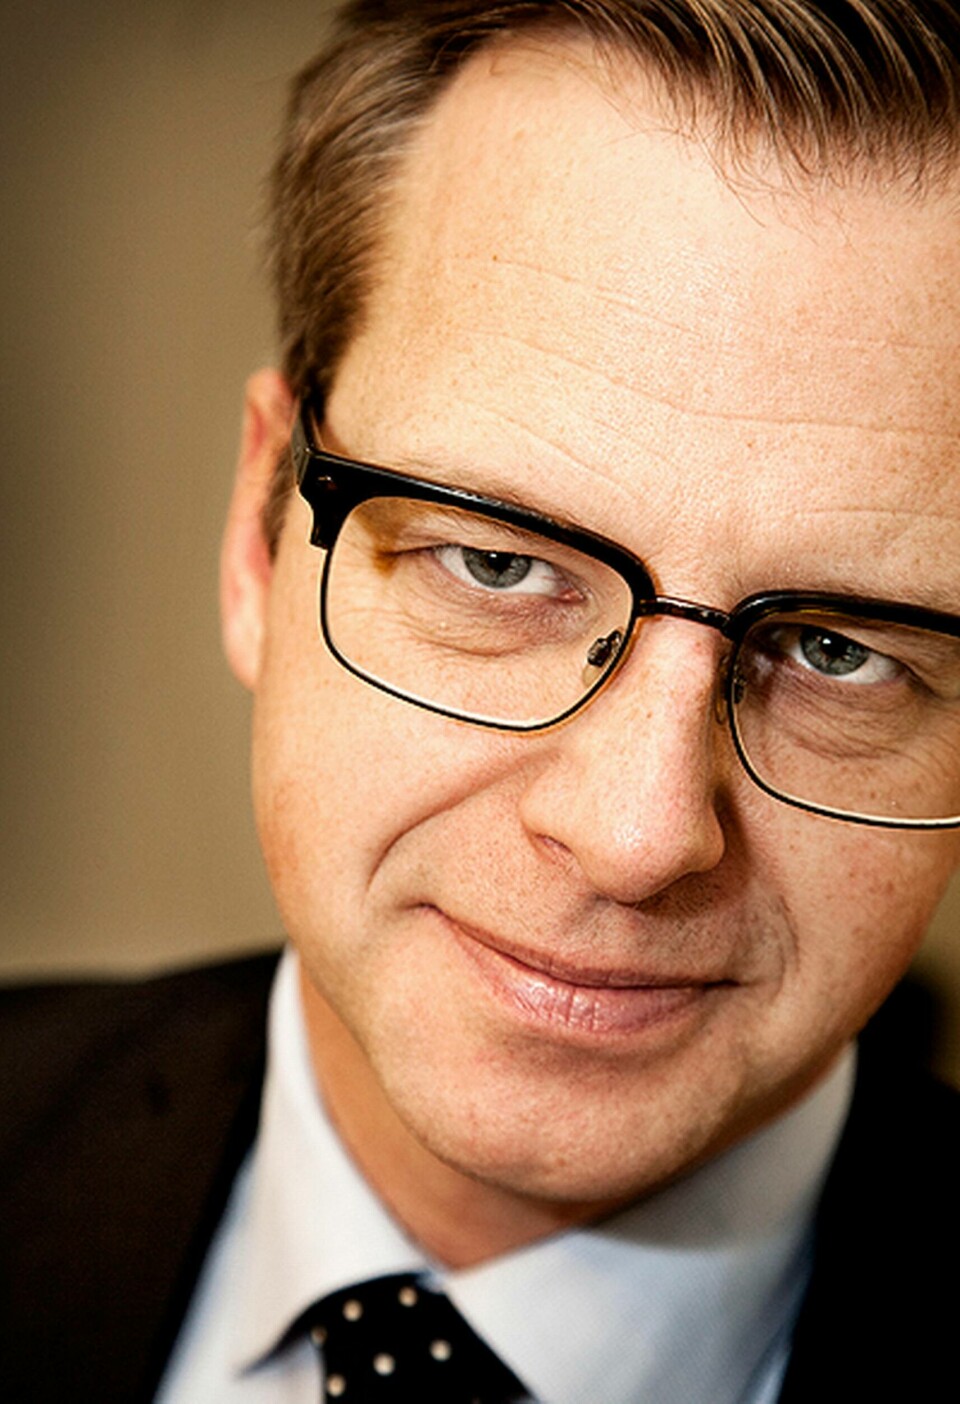 Näringsminister Mikael Damberg var på finalen av 33-listan. Foto: Jörgen Appelgren